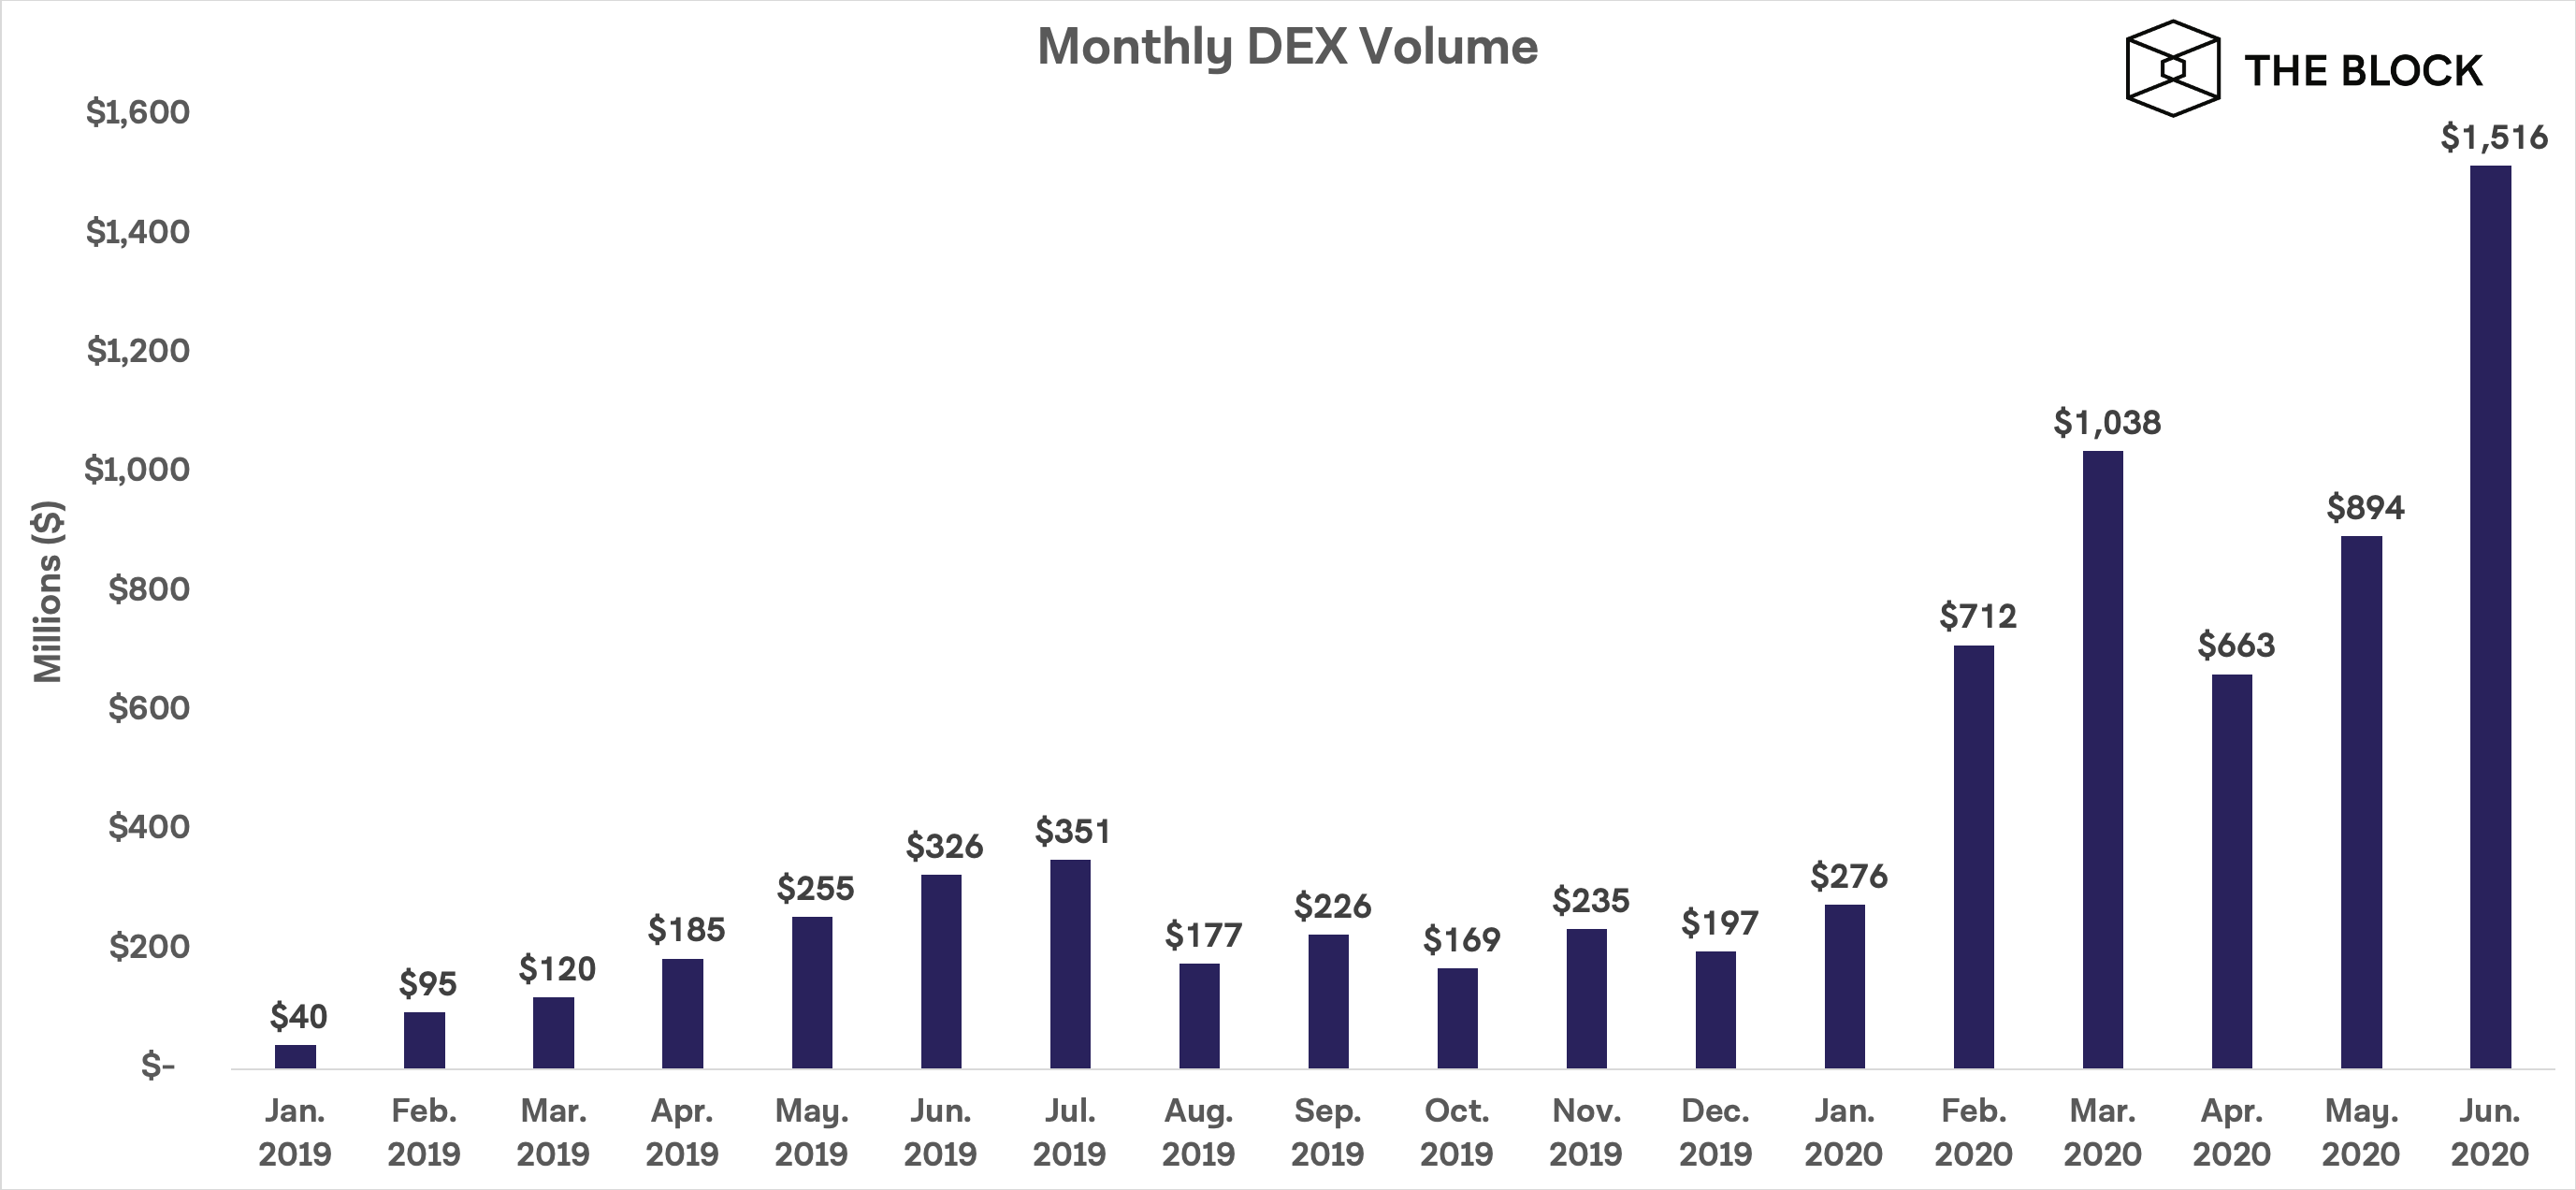 去中心化衍生品交易所DerivaDEX利用新型DEX模式和技术 斩获270万美元风险投资 